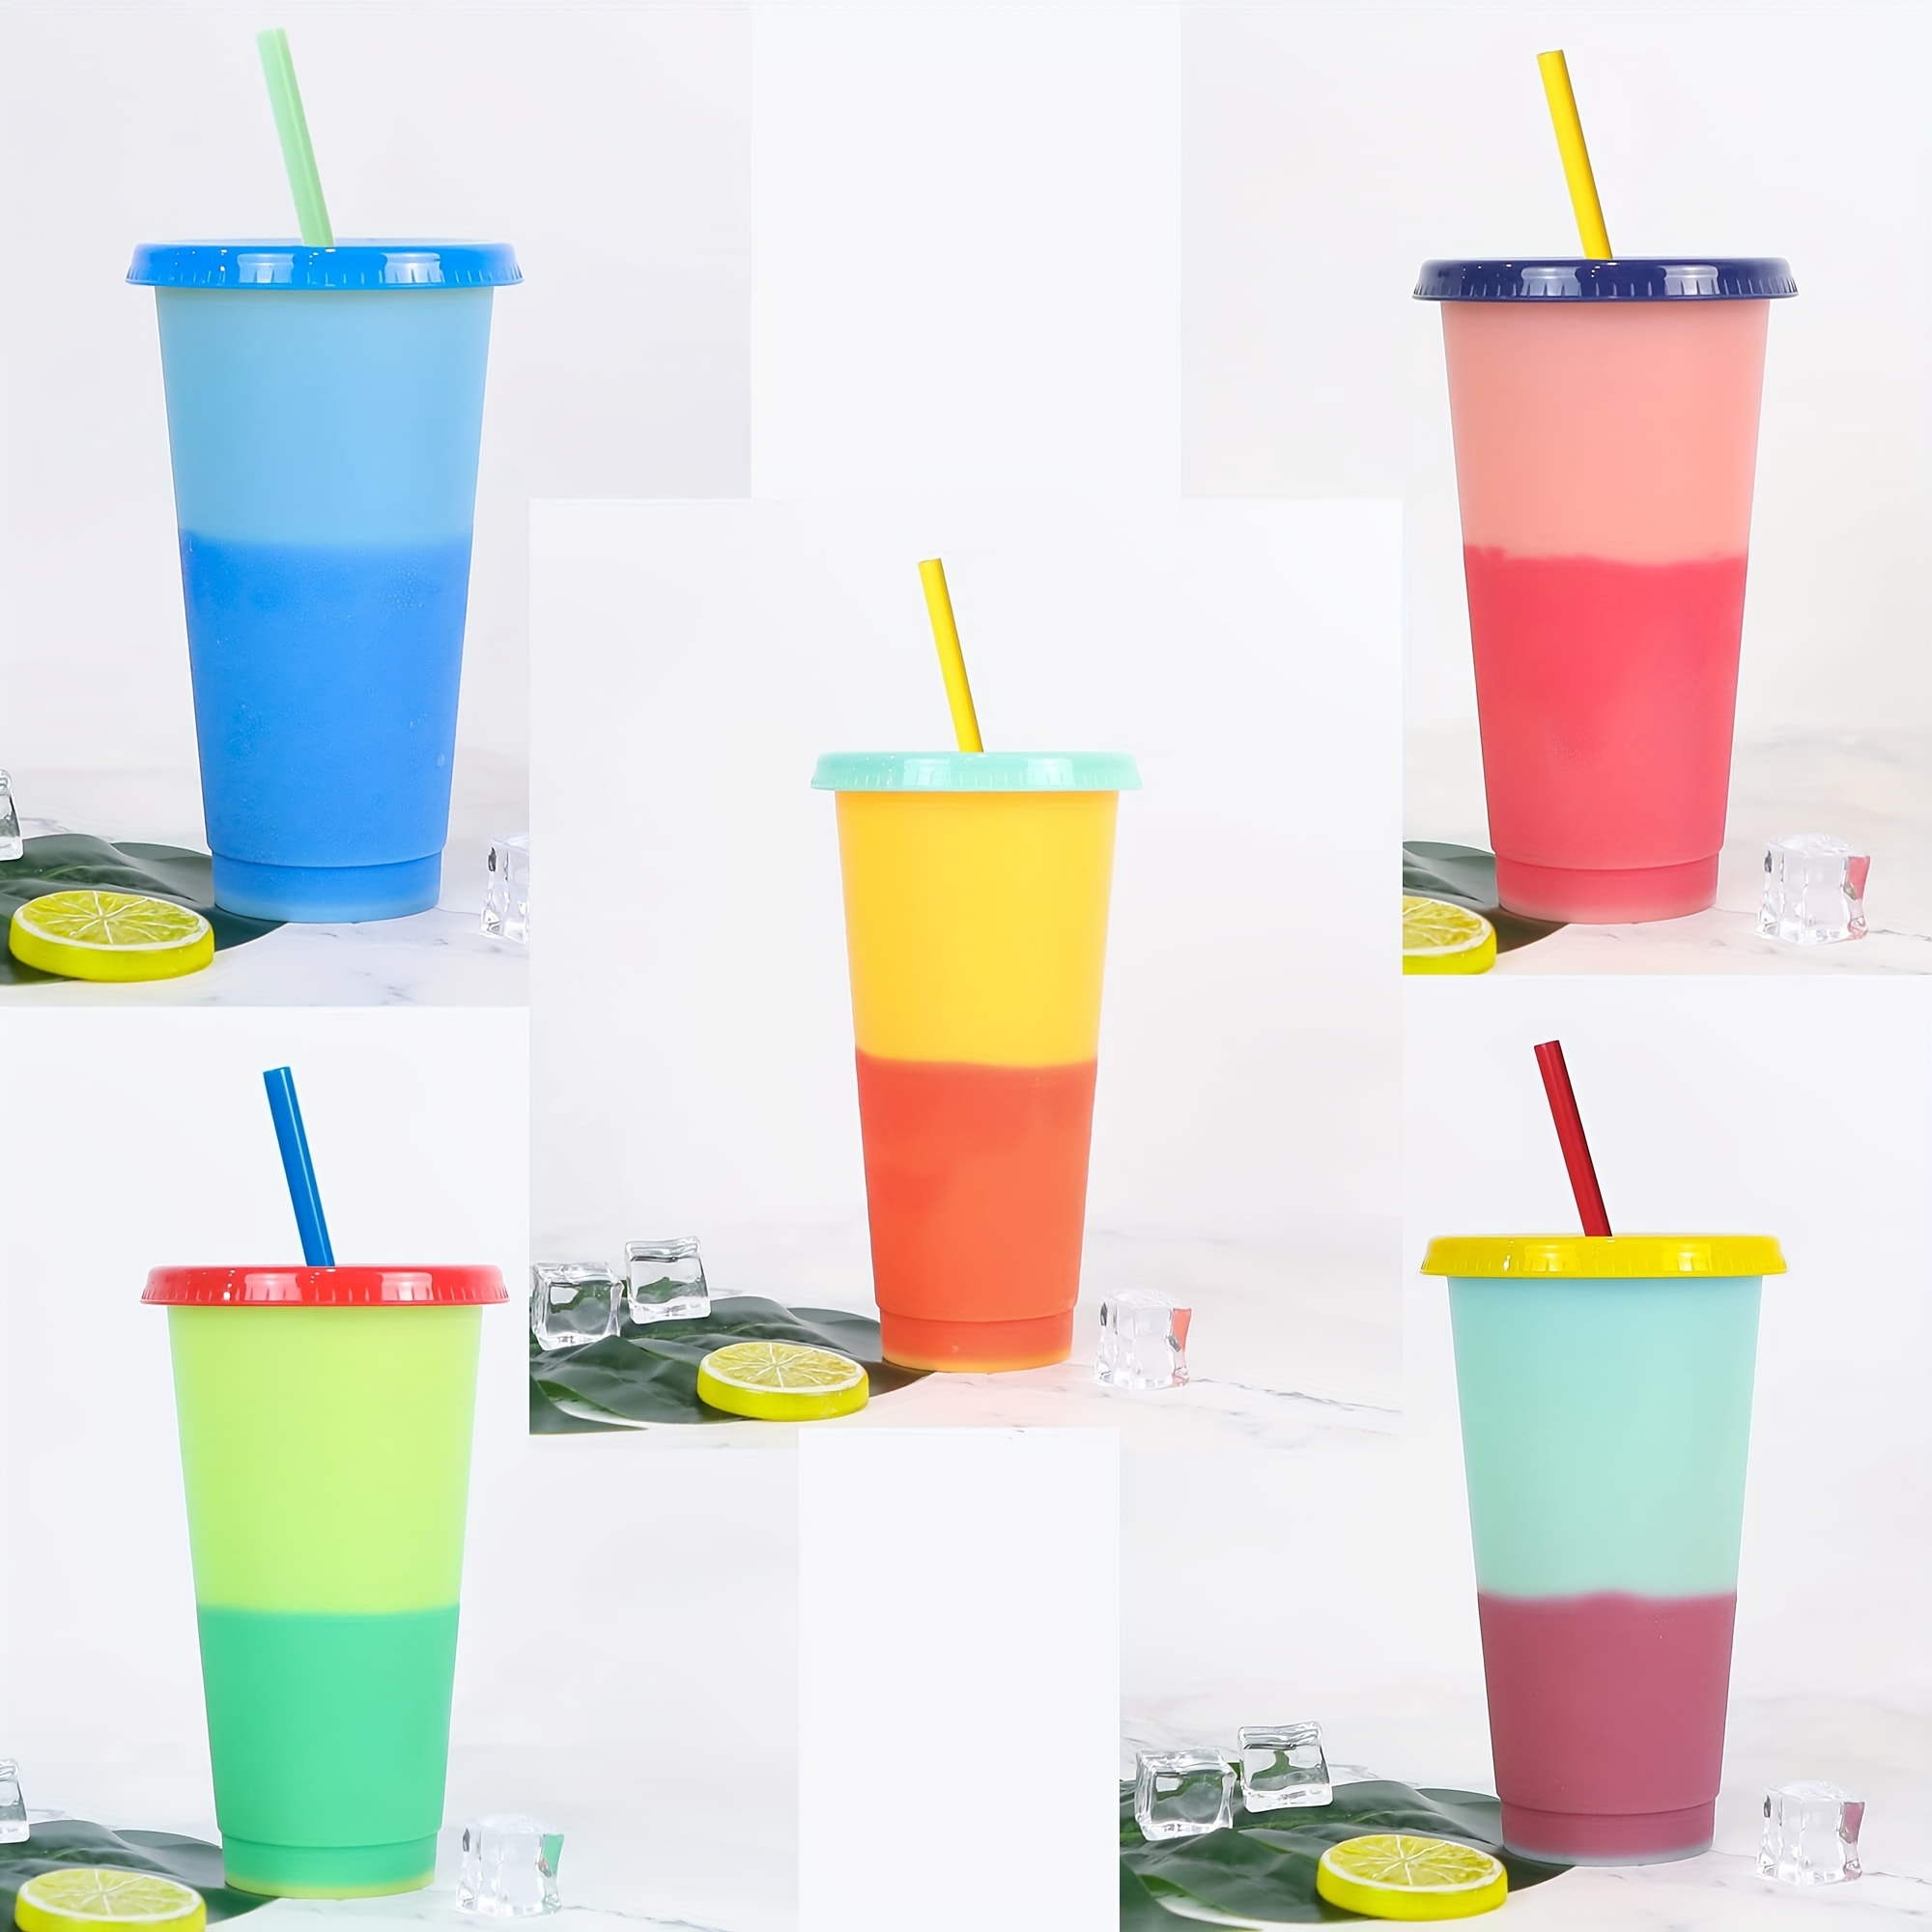 Hot Item] La nueva taza de cambio de color de temperatura de 2020, la taza  de plástico que cambia de color para beber en frío